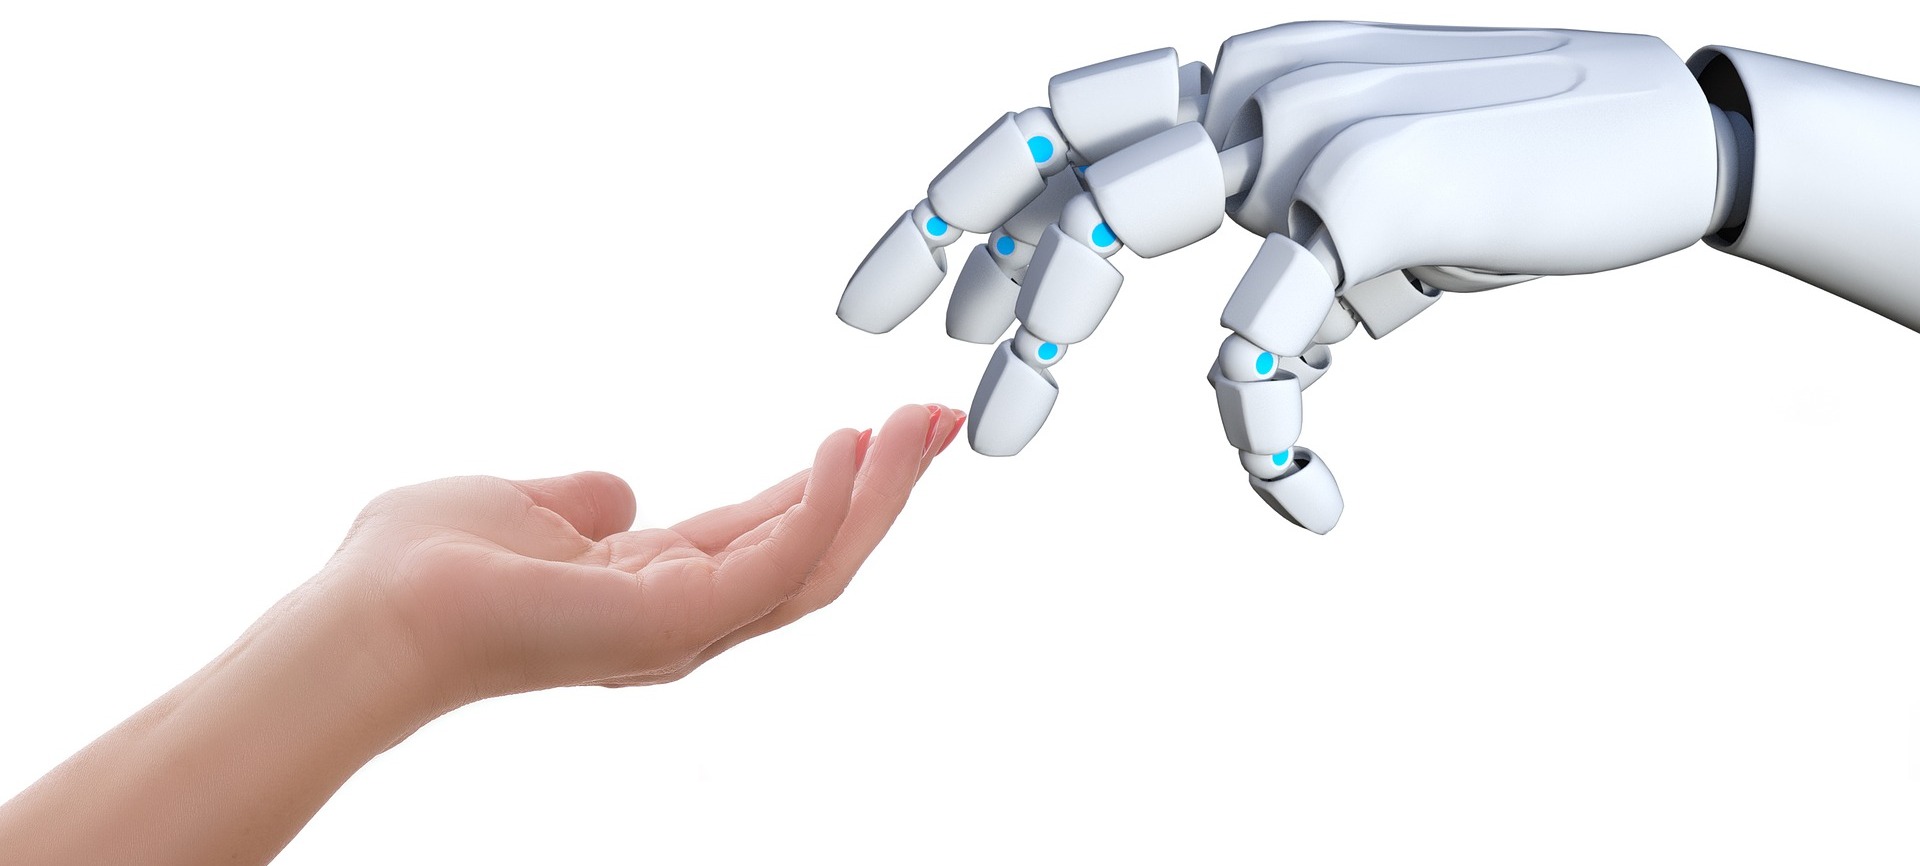 Mänsklig hand och en robothand